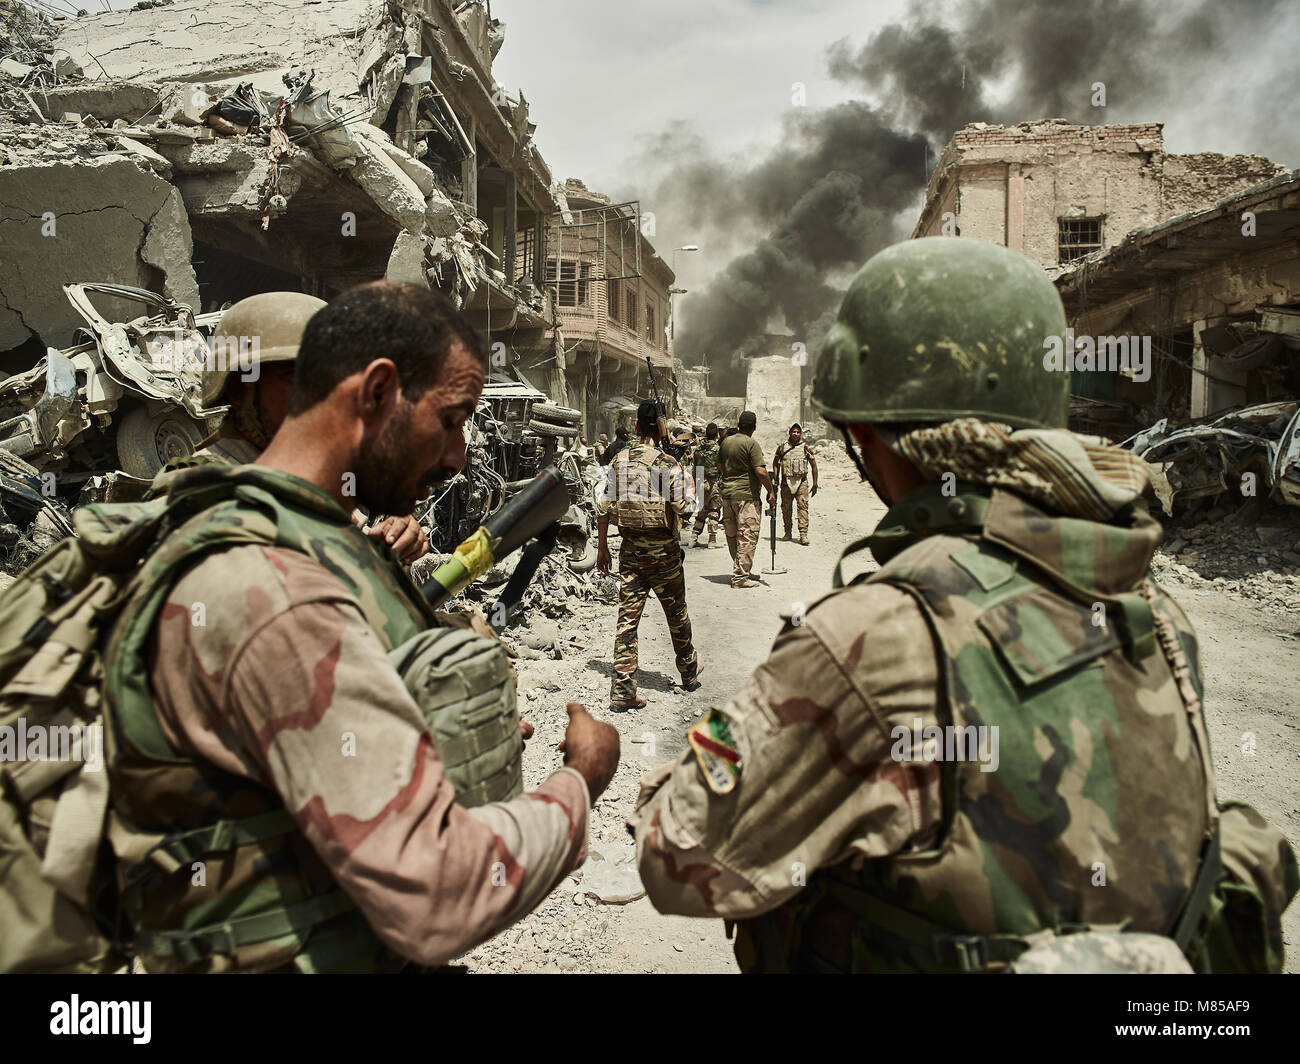 Irakische Soldaten sehen sich als Koalition airstrike sein Ziel erfüllt. Die Stadt Mosul im Nordirak hat unter islamischen Staat militanten wurde für 3 Jahre, seit Juni 2014. Im Juli 2017 die Streitkräfte der Koalition geführt von der irakischen Armee hat endlich befreit die Stadt aus der Hand von Terroristen. Stockfoto